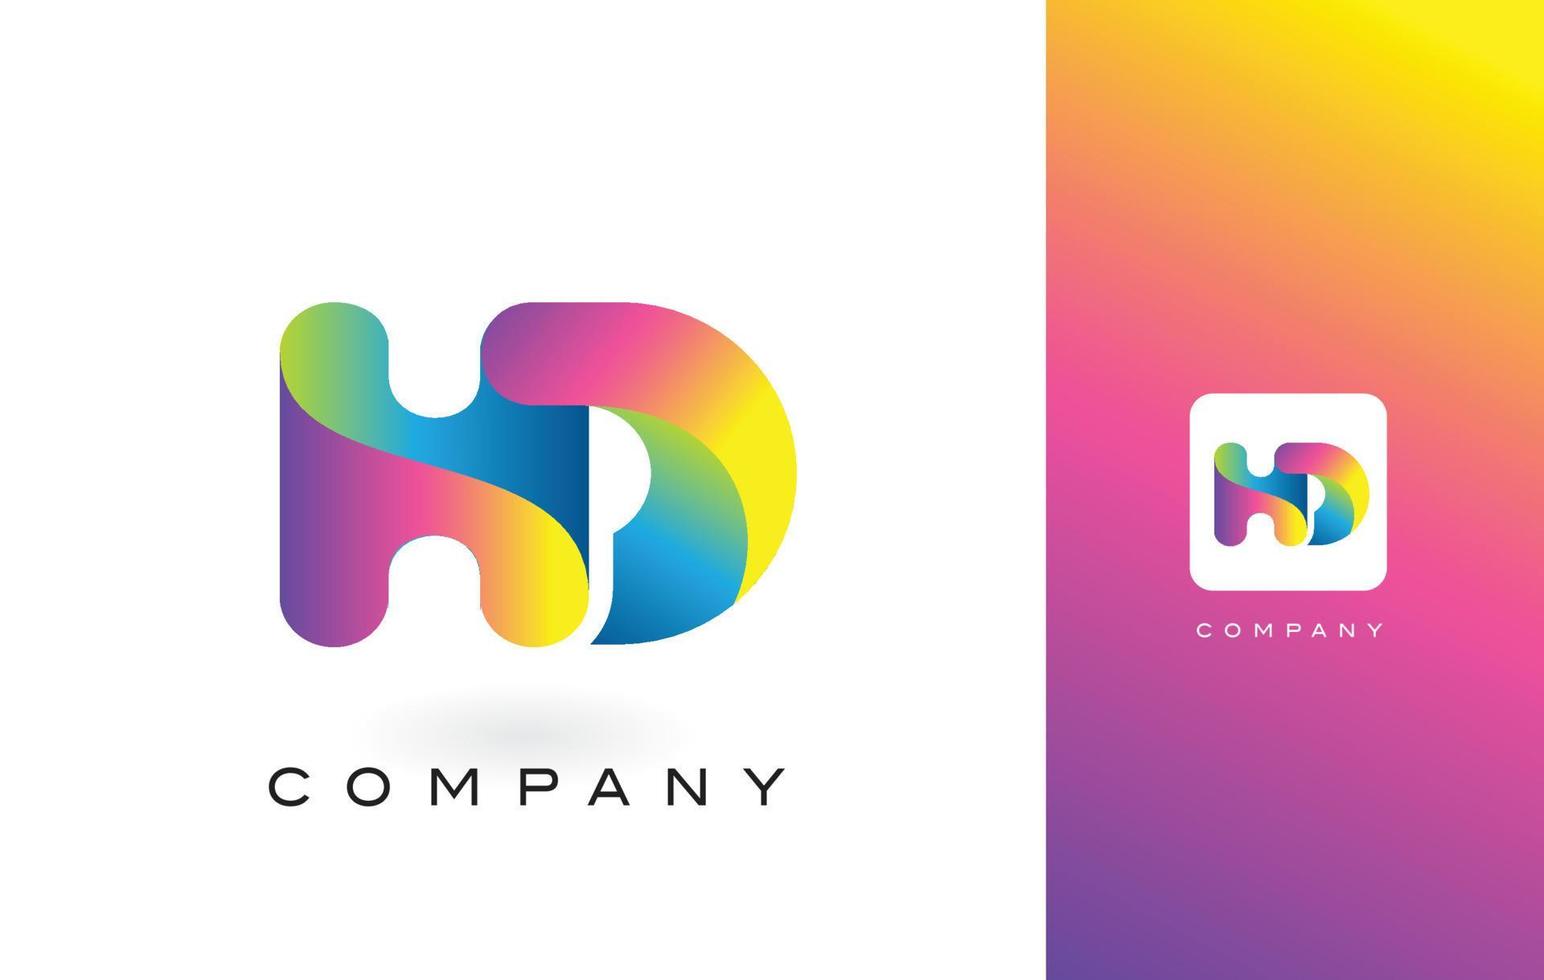 letra do logotipo do hd com cores vibrantes e bonitas do arco-íris. vetor de letras roxas e magenta na moda colorida.